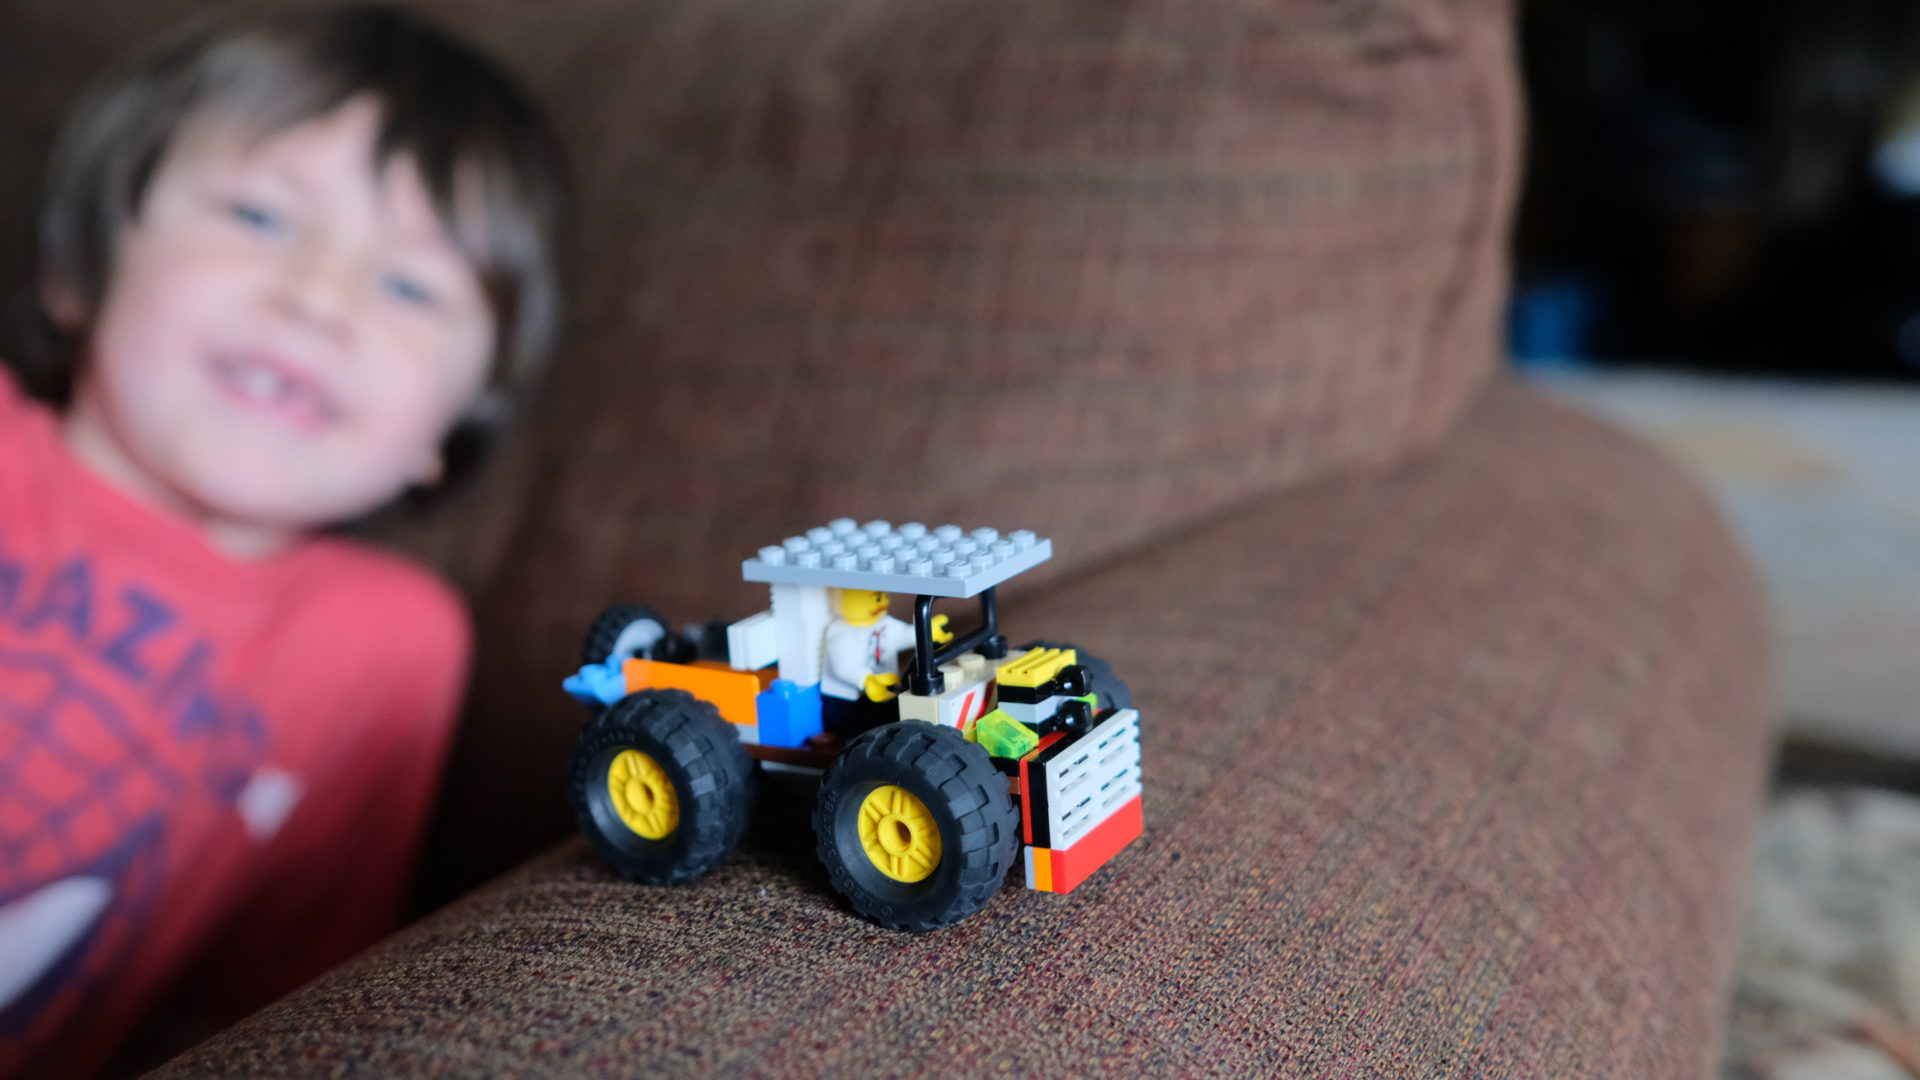 Emmett's LEGO truck